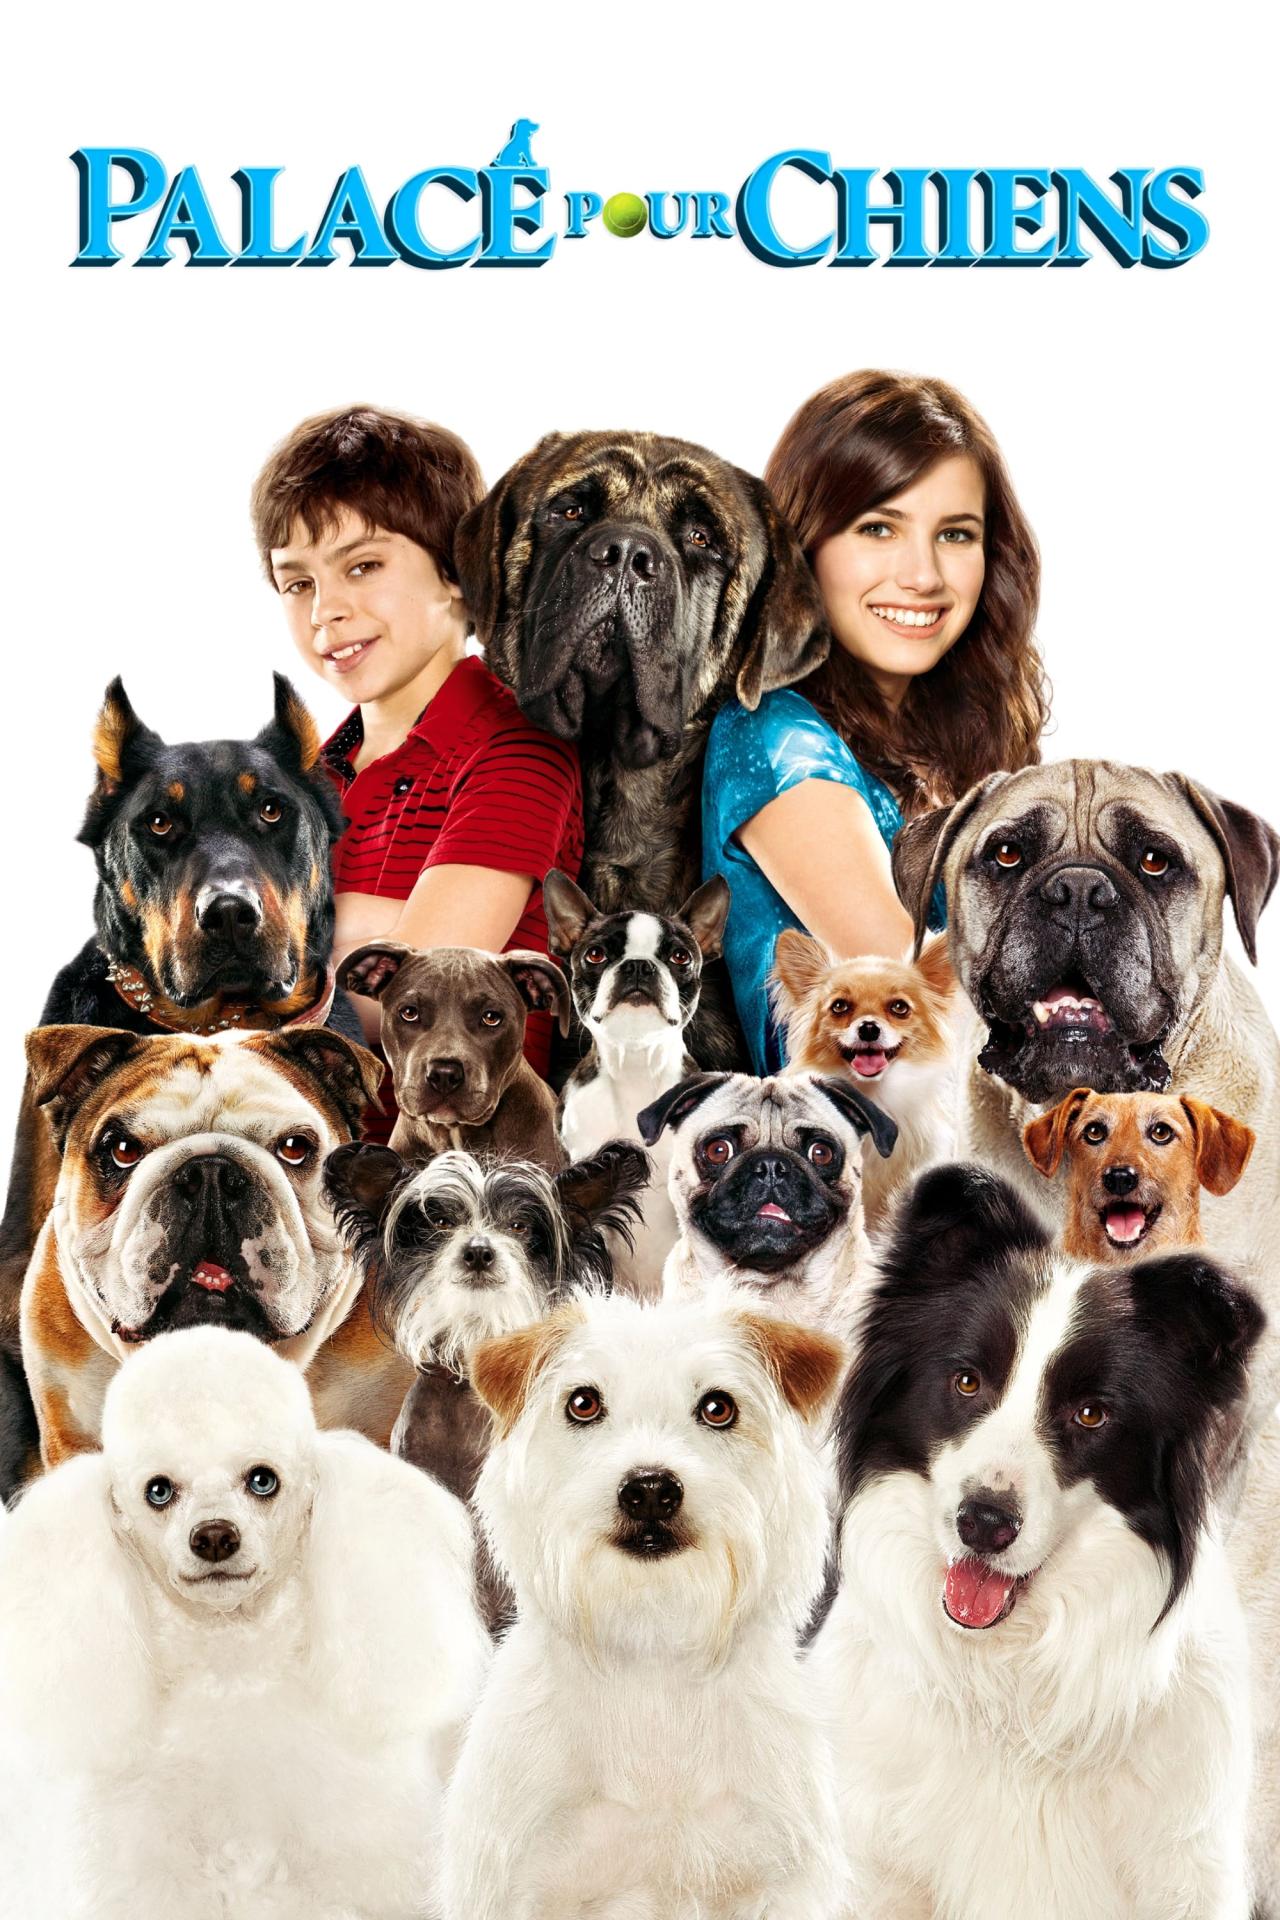 Palace pour chiens est-il disponible sur Netflix ou autre ?